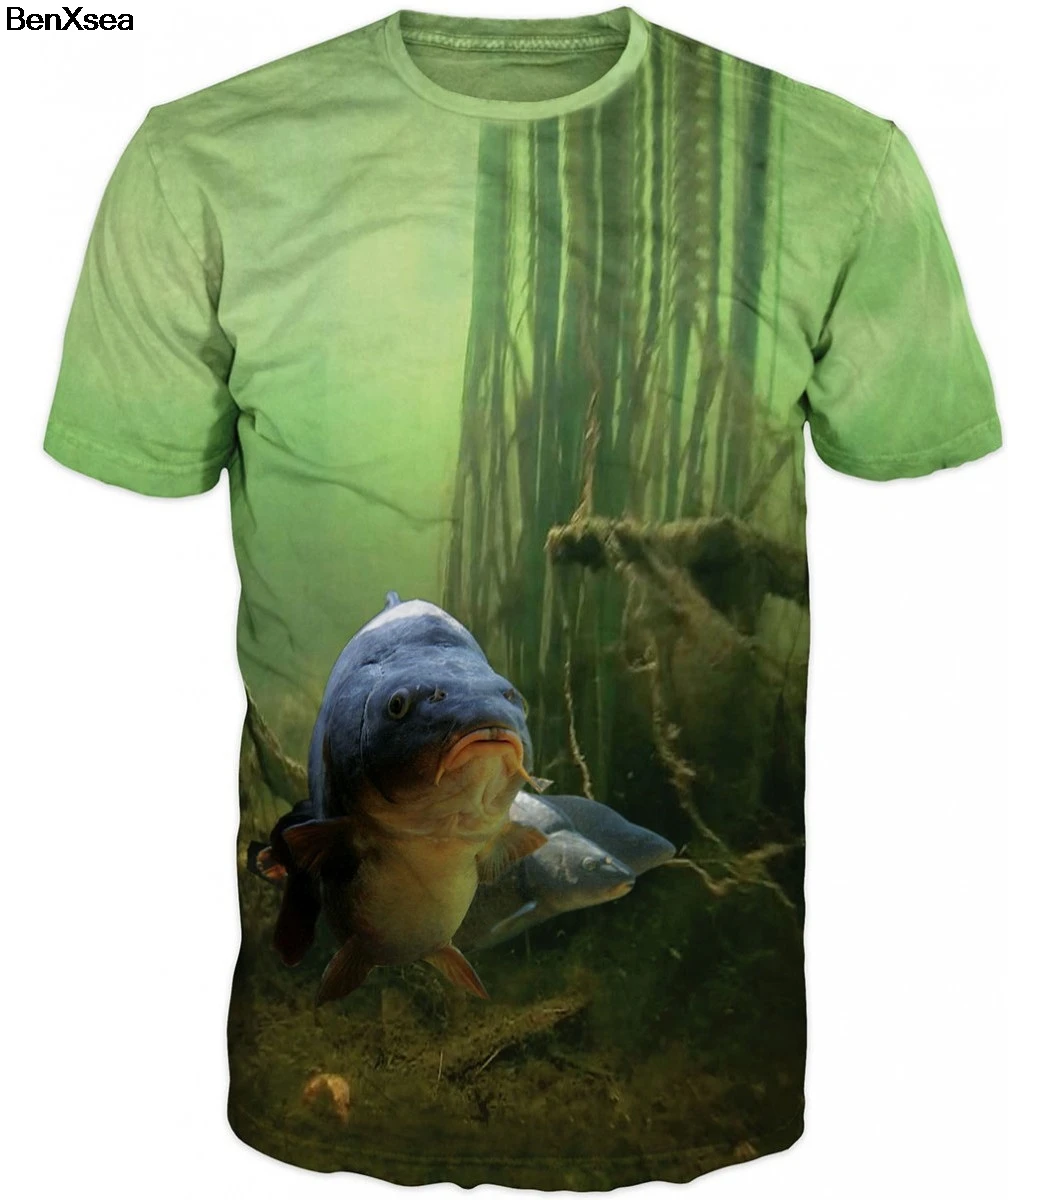 Модная стильная футболка с 3D принтом, крутая Мужская и женская футболка с 3D рыбкой, хобби, футболка с карпом, большие размеры, хип-хоп - Цвет: Серебристый